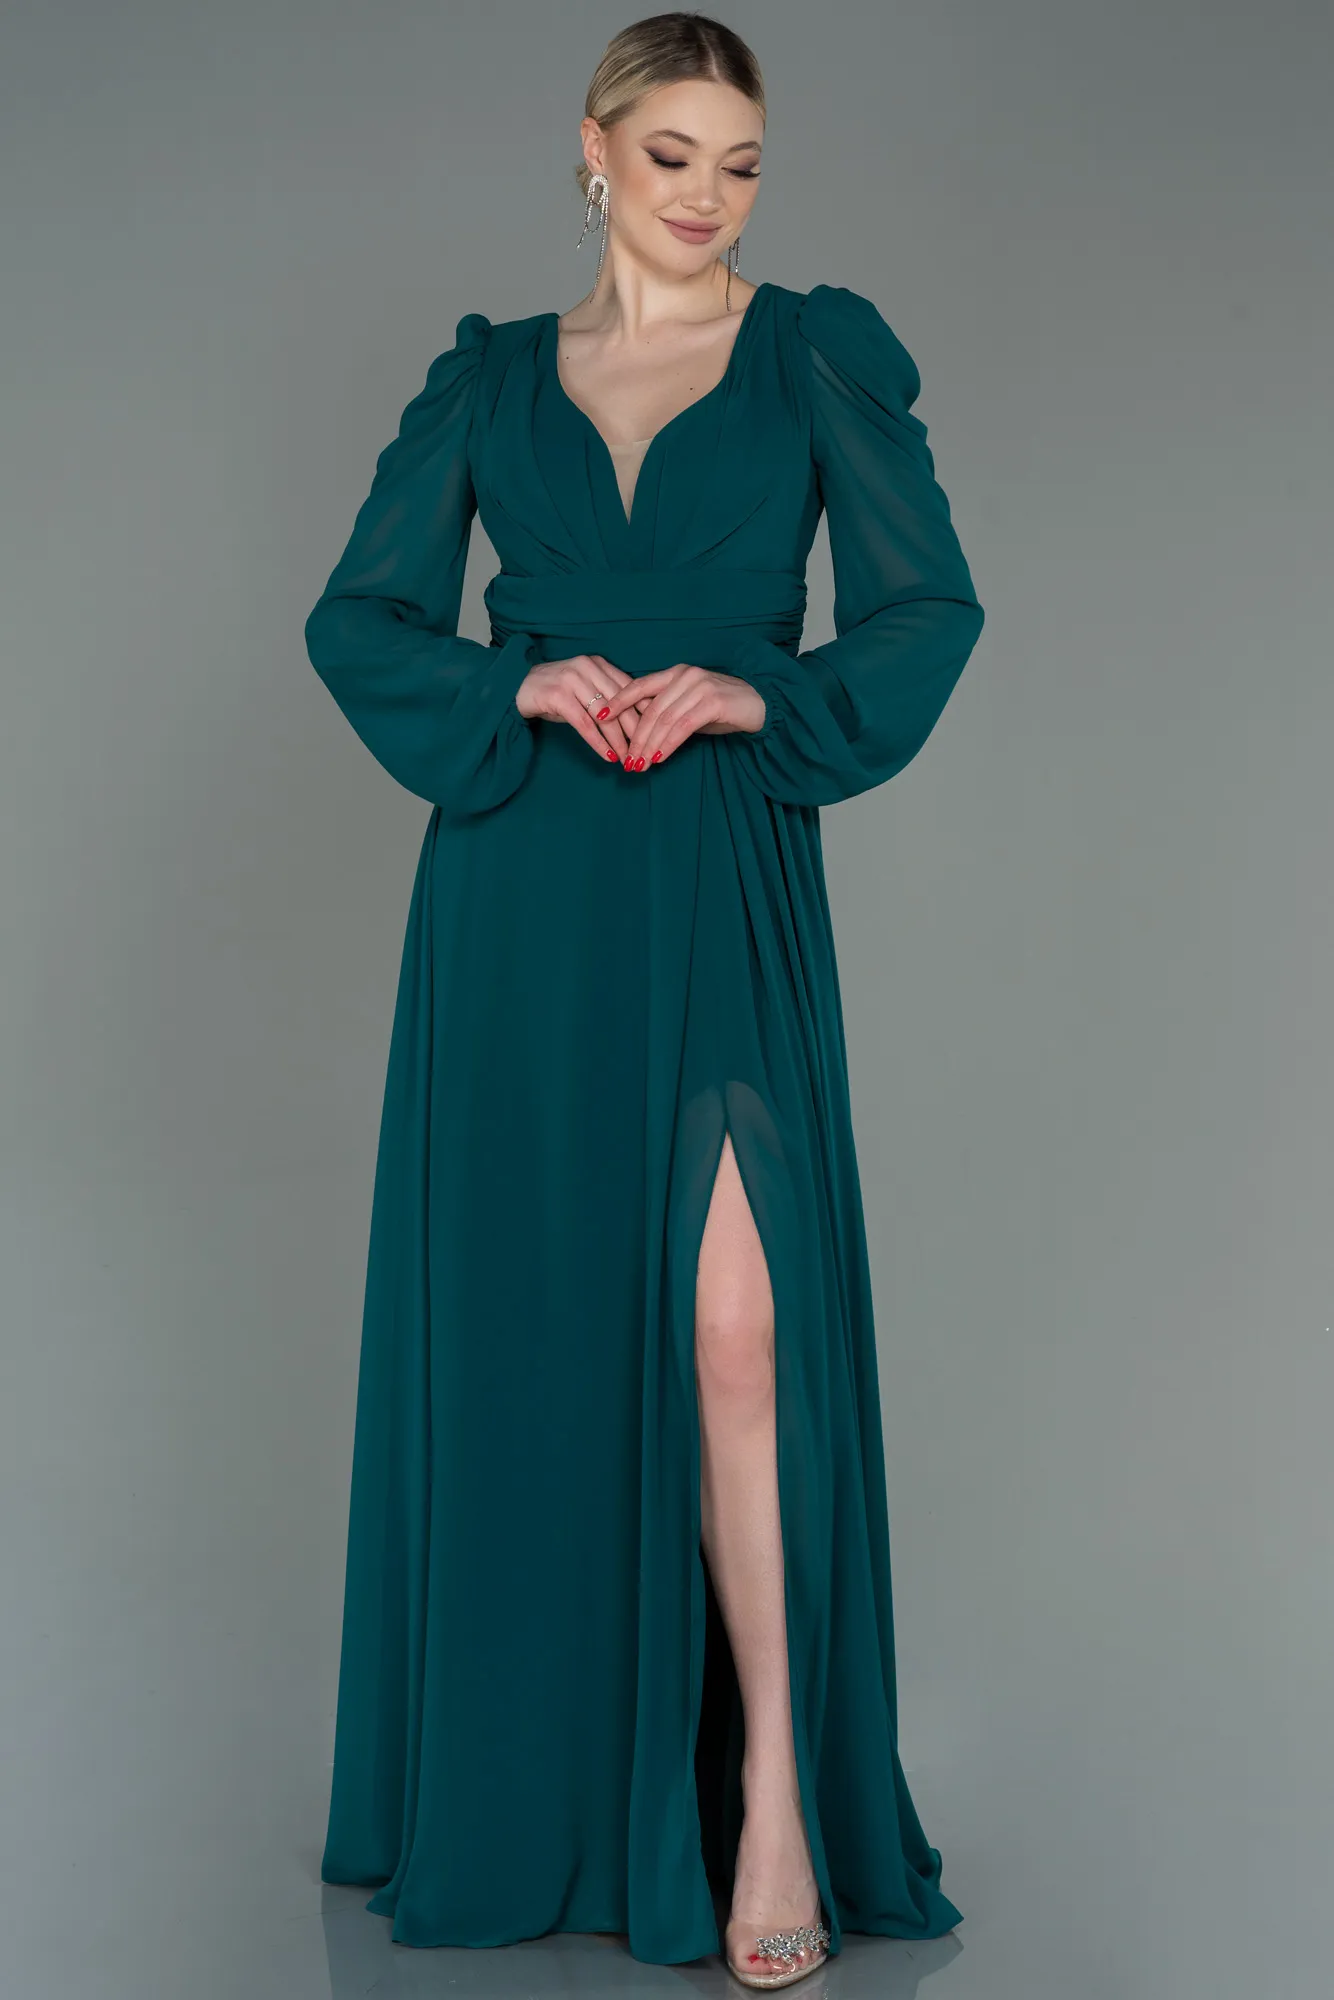 Emerald Green-Long Chiffon Evening Dress ABU3085